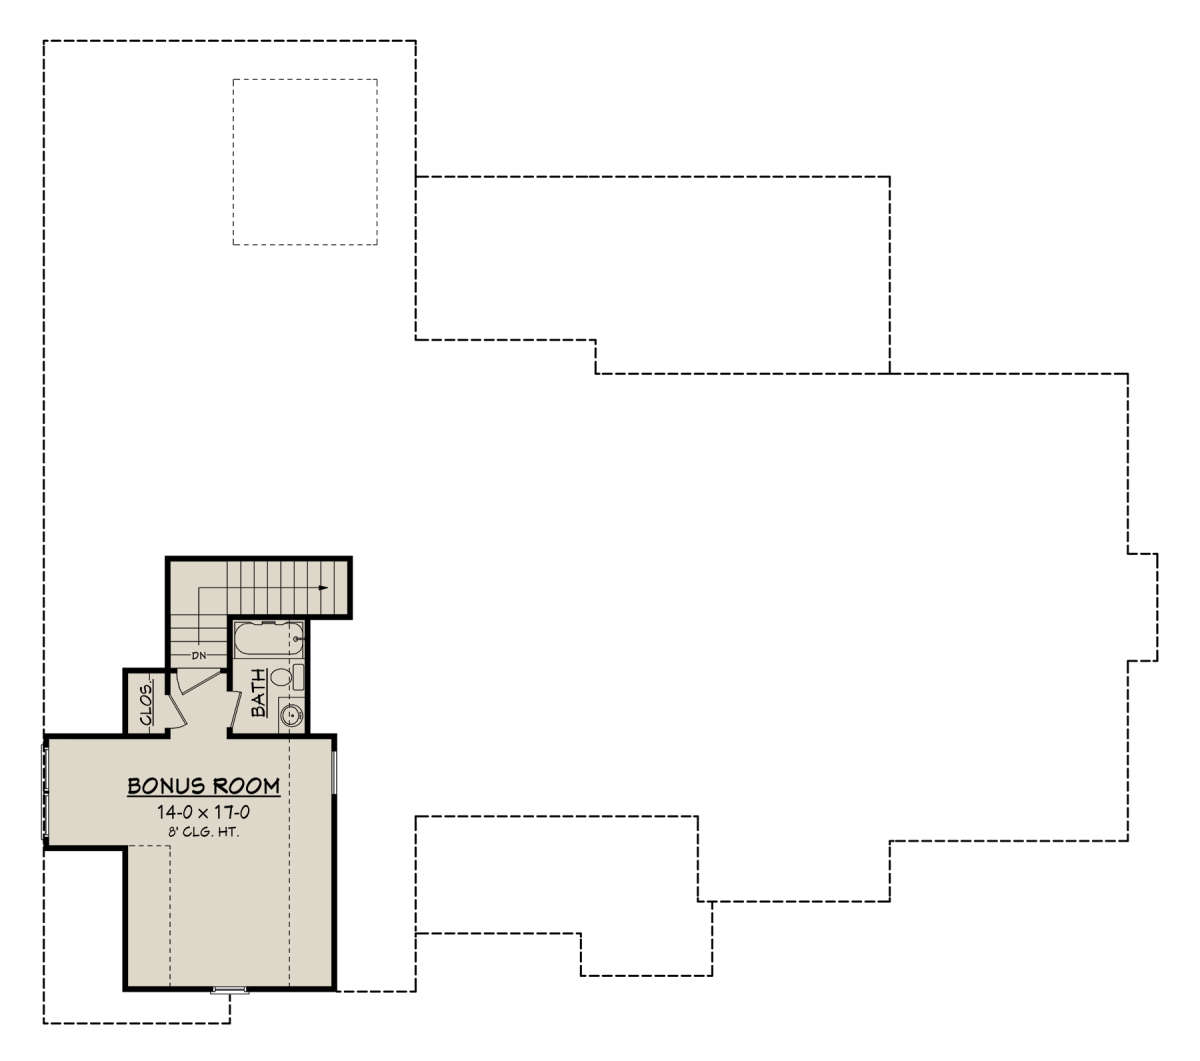 Bonus Room for House Plan #041-00174